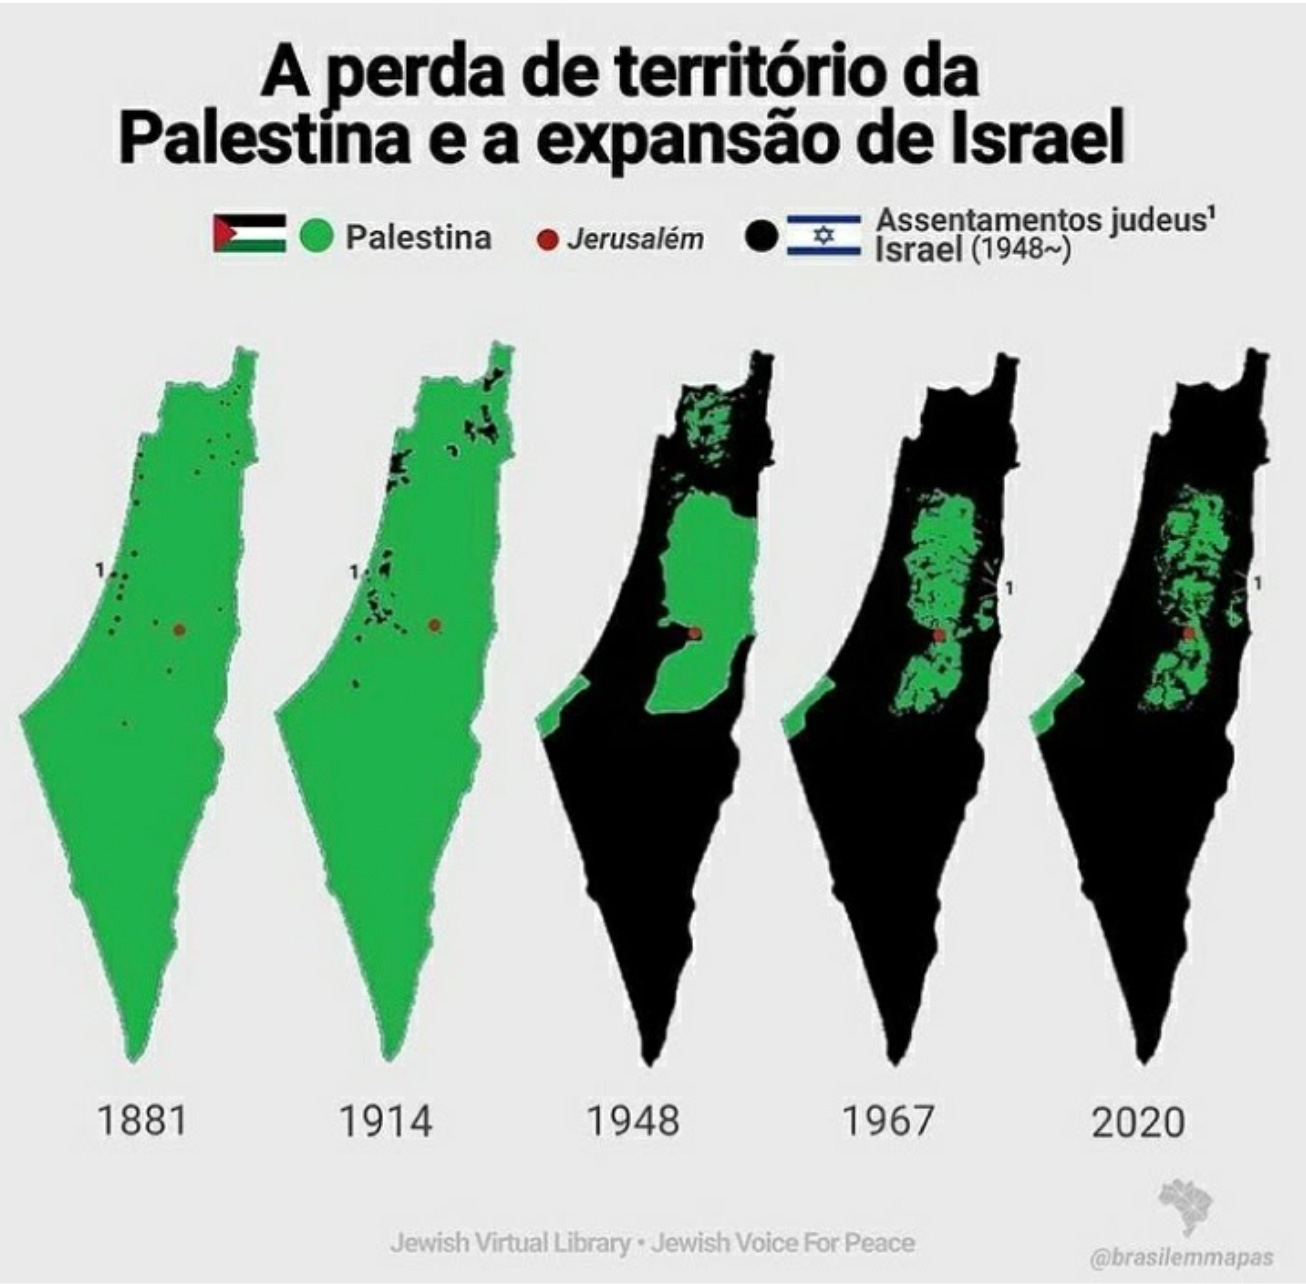 Palestina: entre o massacre sionista e o sionismo "de esquerda" | PSTU